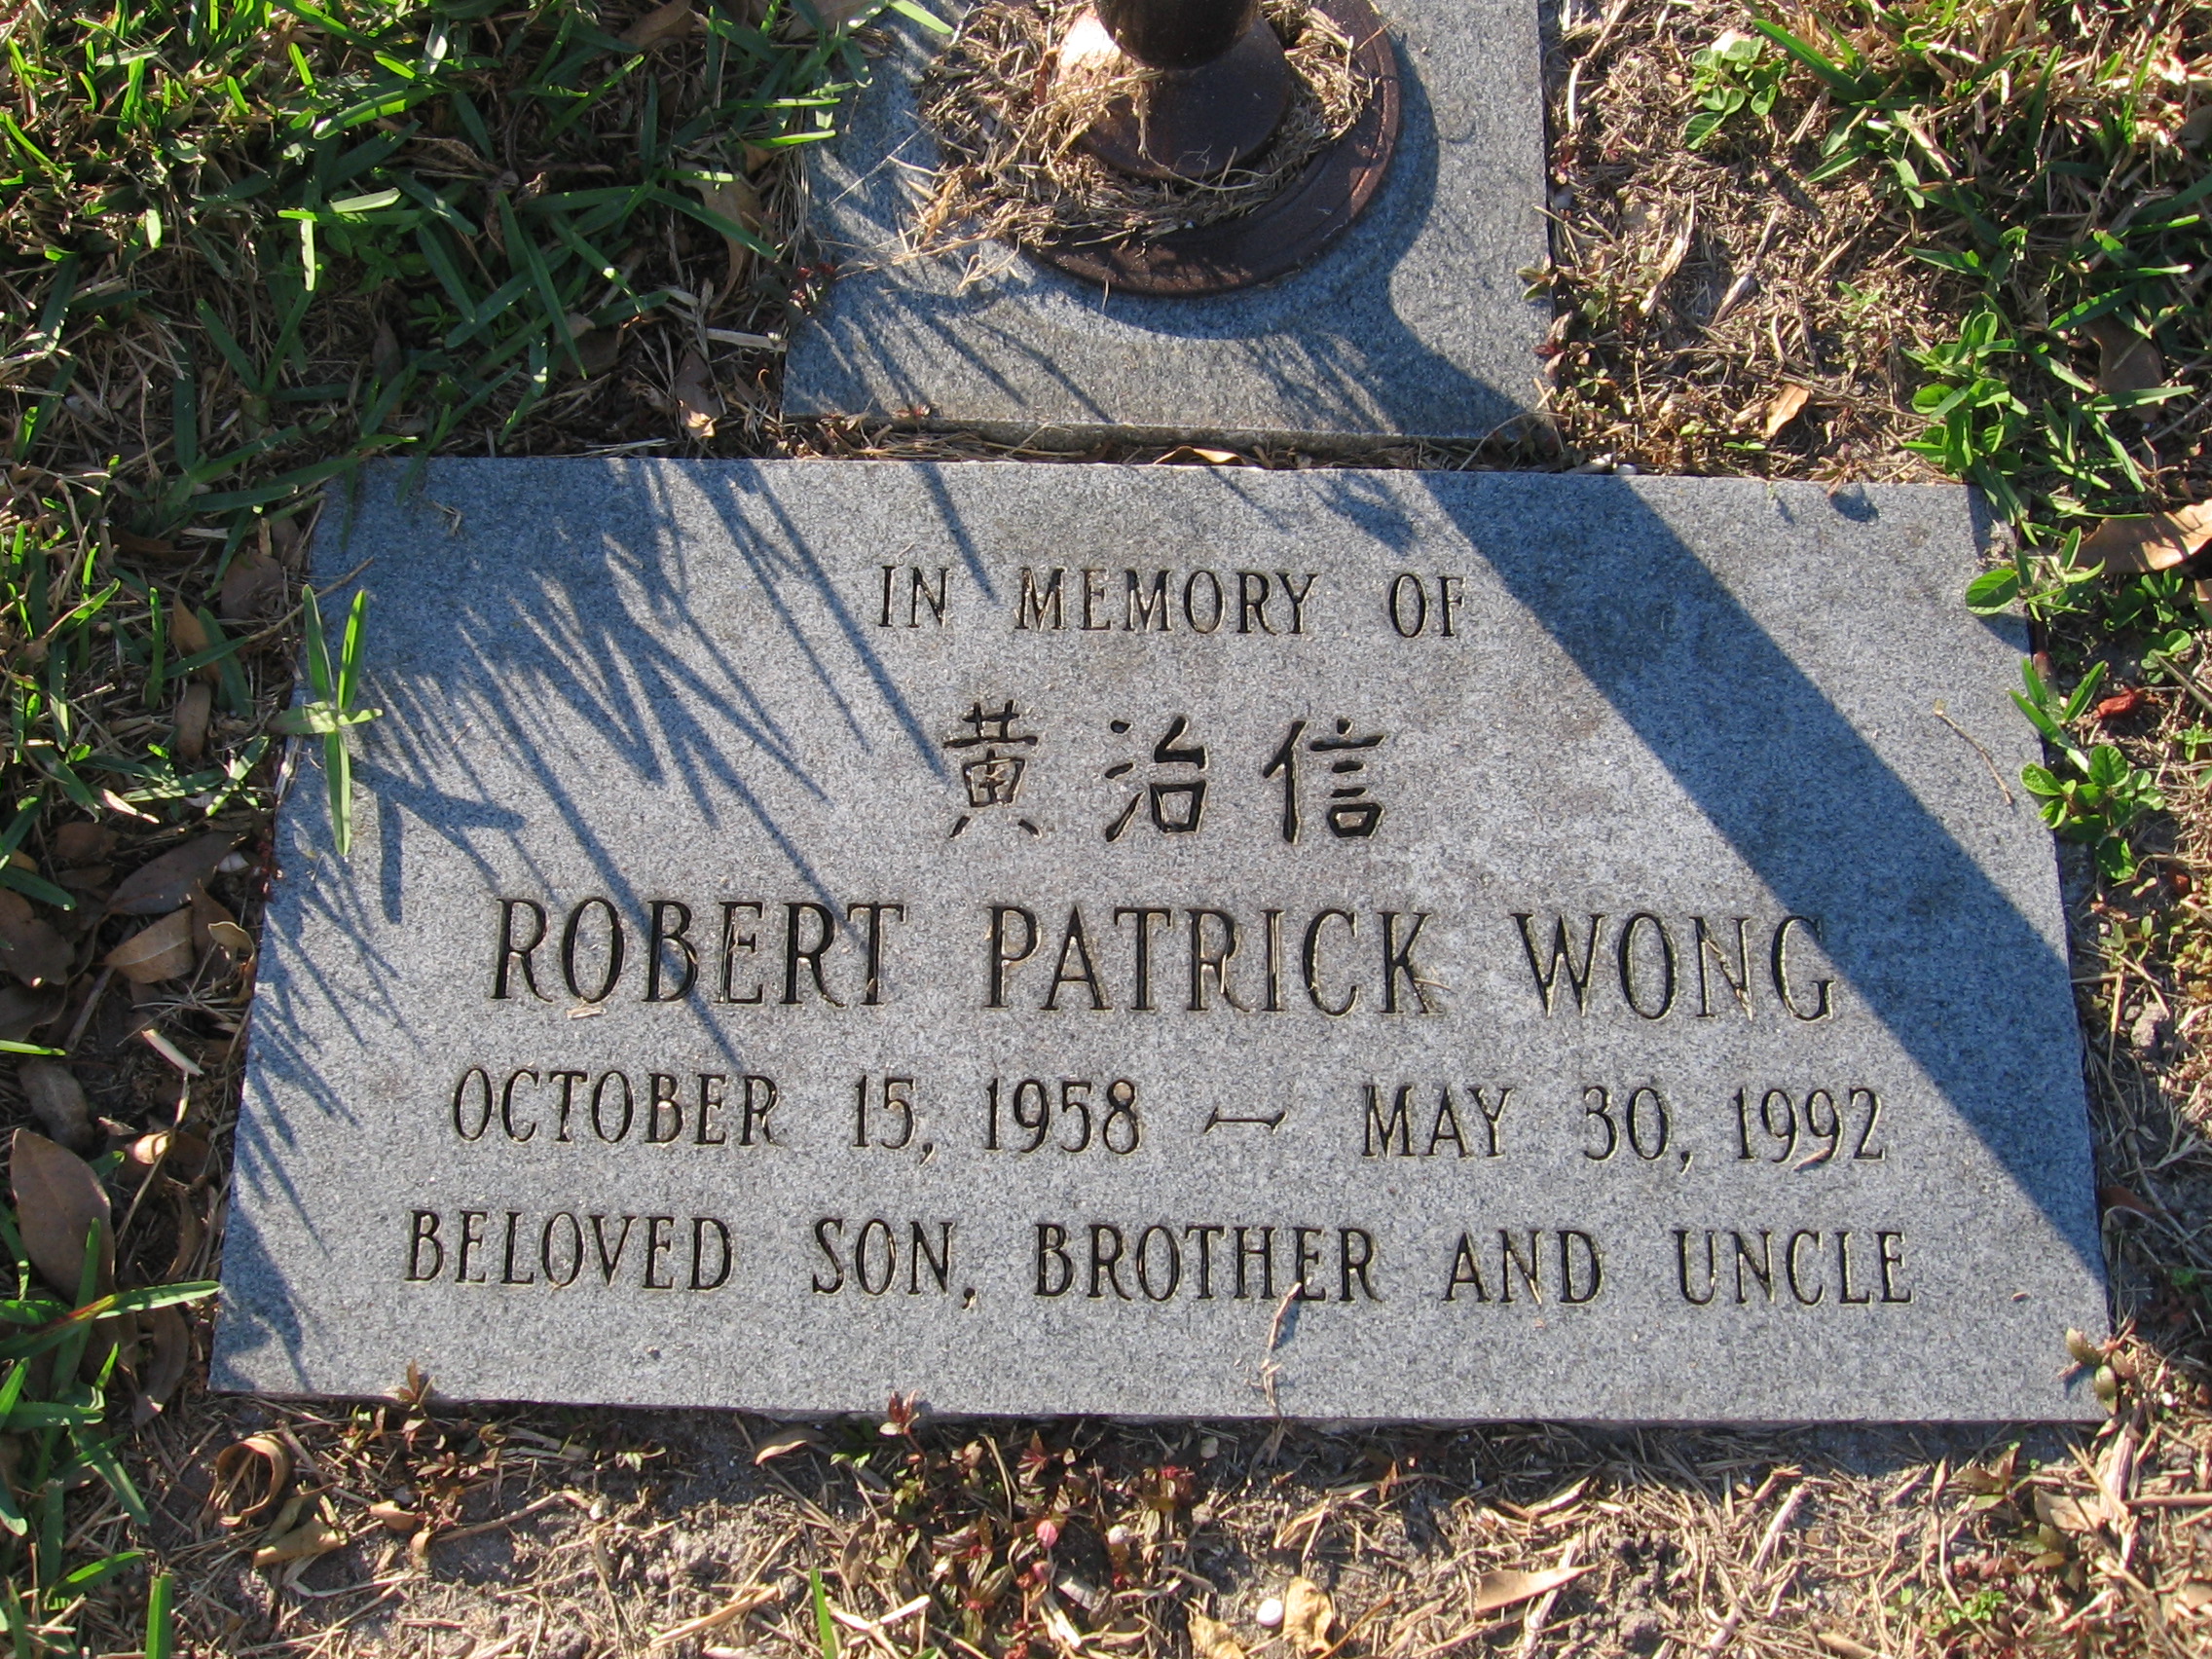 Robert Patrick Wong